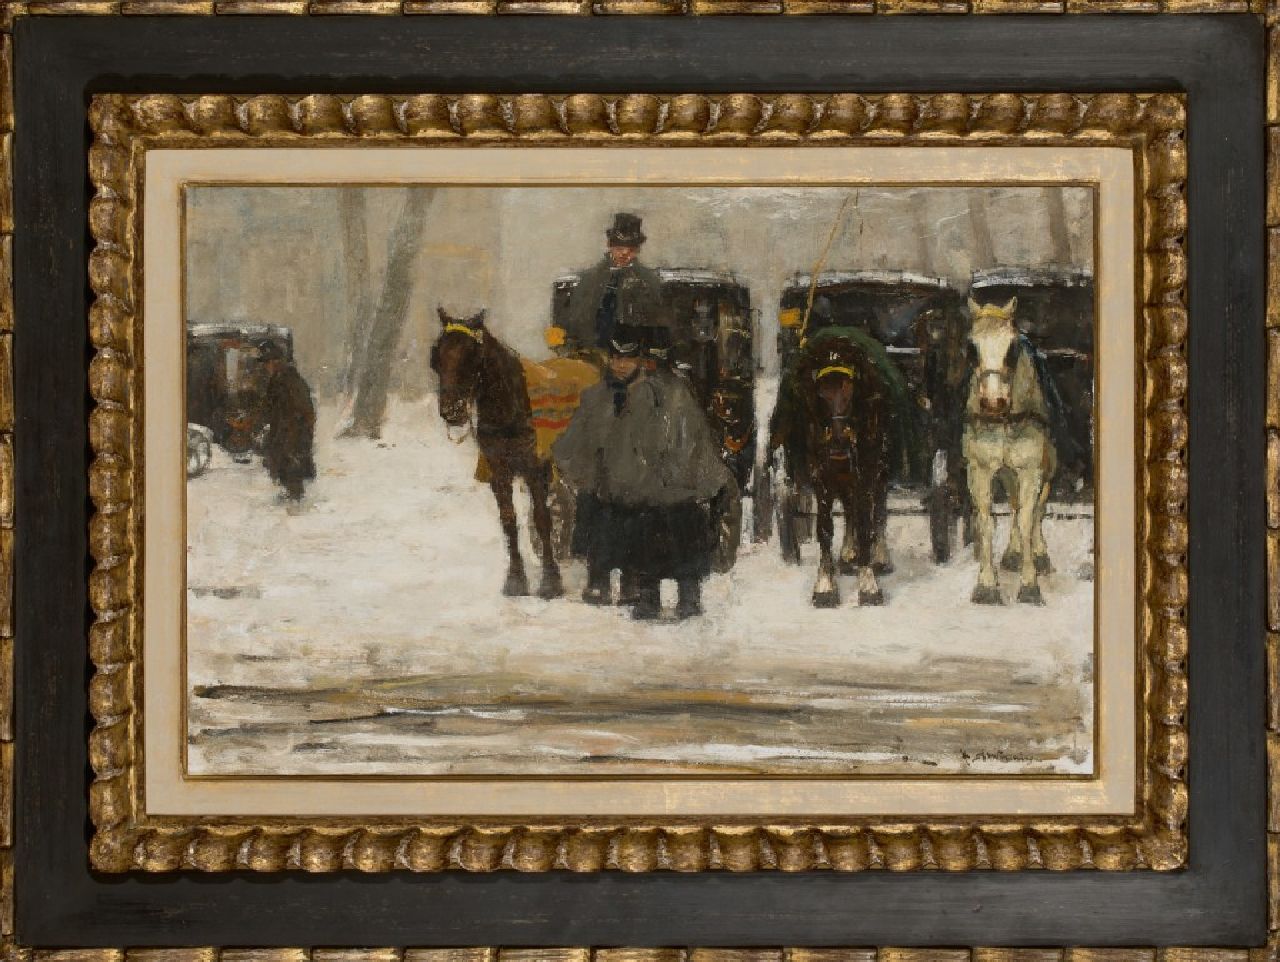 Arntzenius P.F.N.J.  | Pieter Florentius Nicolaas Jacobus 'Floris' Arntzenius, Coaches in the snow, oil on panel 38.7 x 59.4 cm, signed l.r. and painted circa 1895